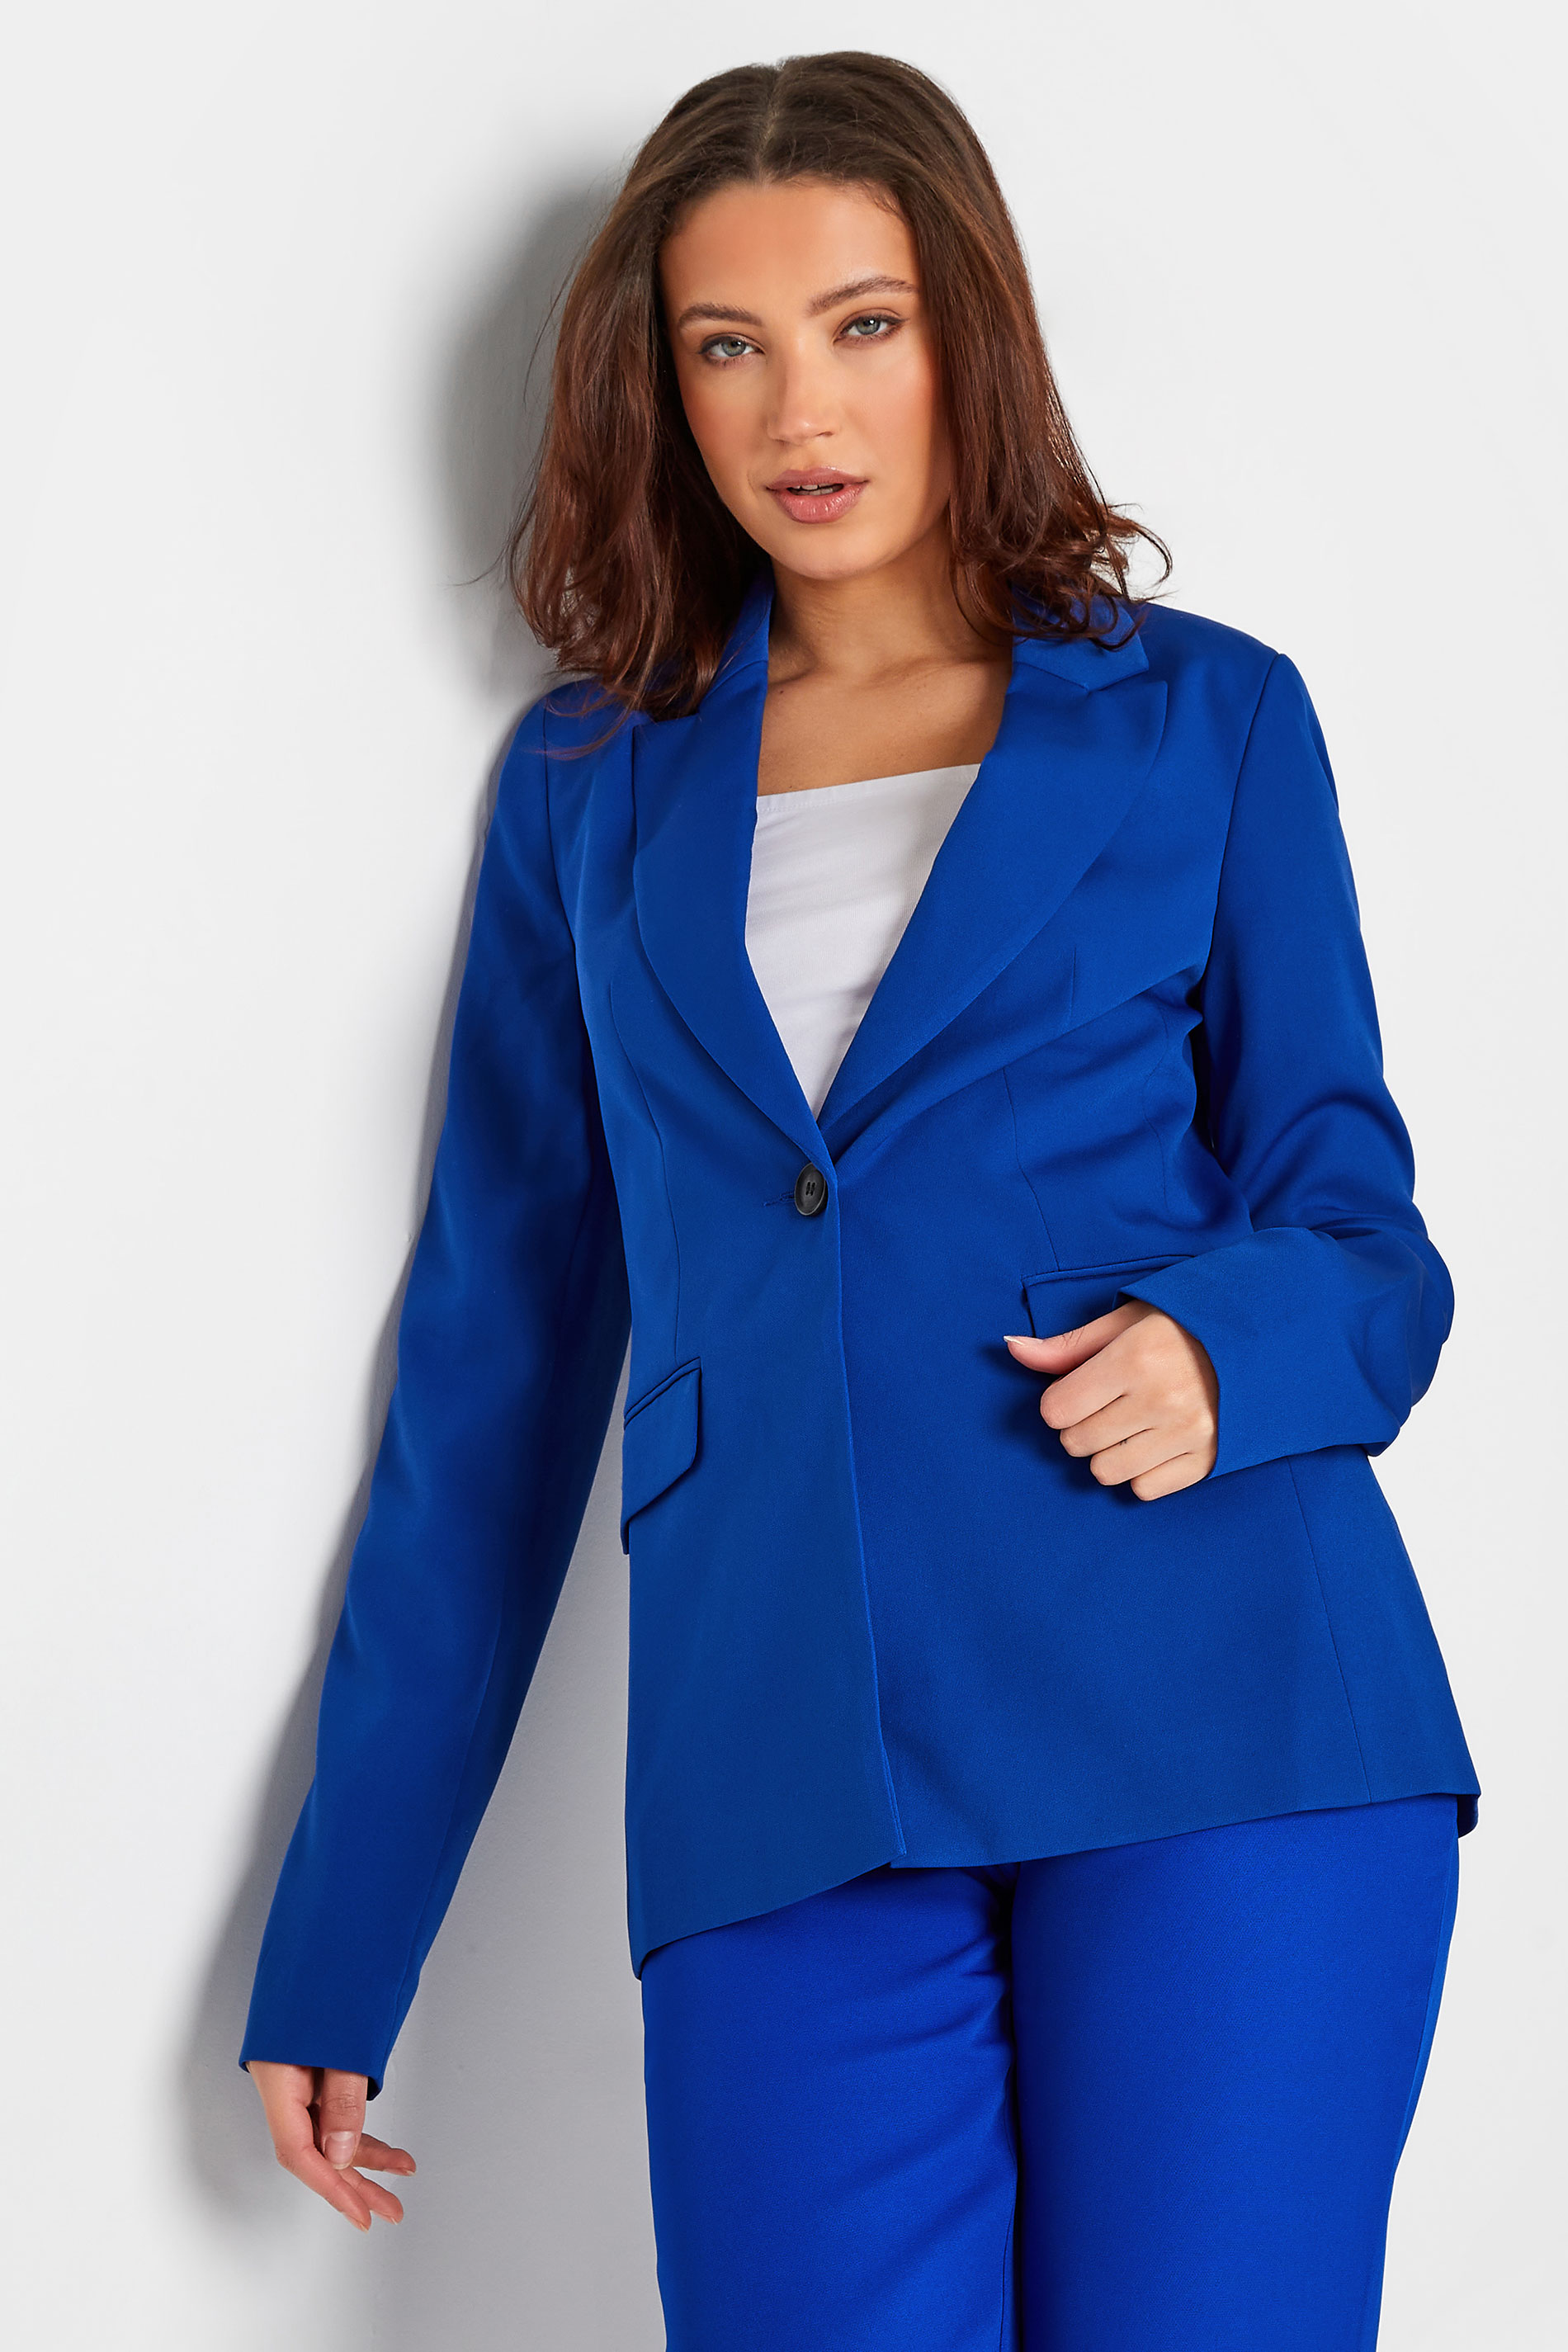 LTS Tall Women's Cobalt Blue Scuba Crepe Tailored Blazer | Long Tall Sally  1